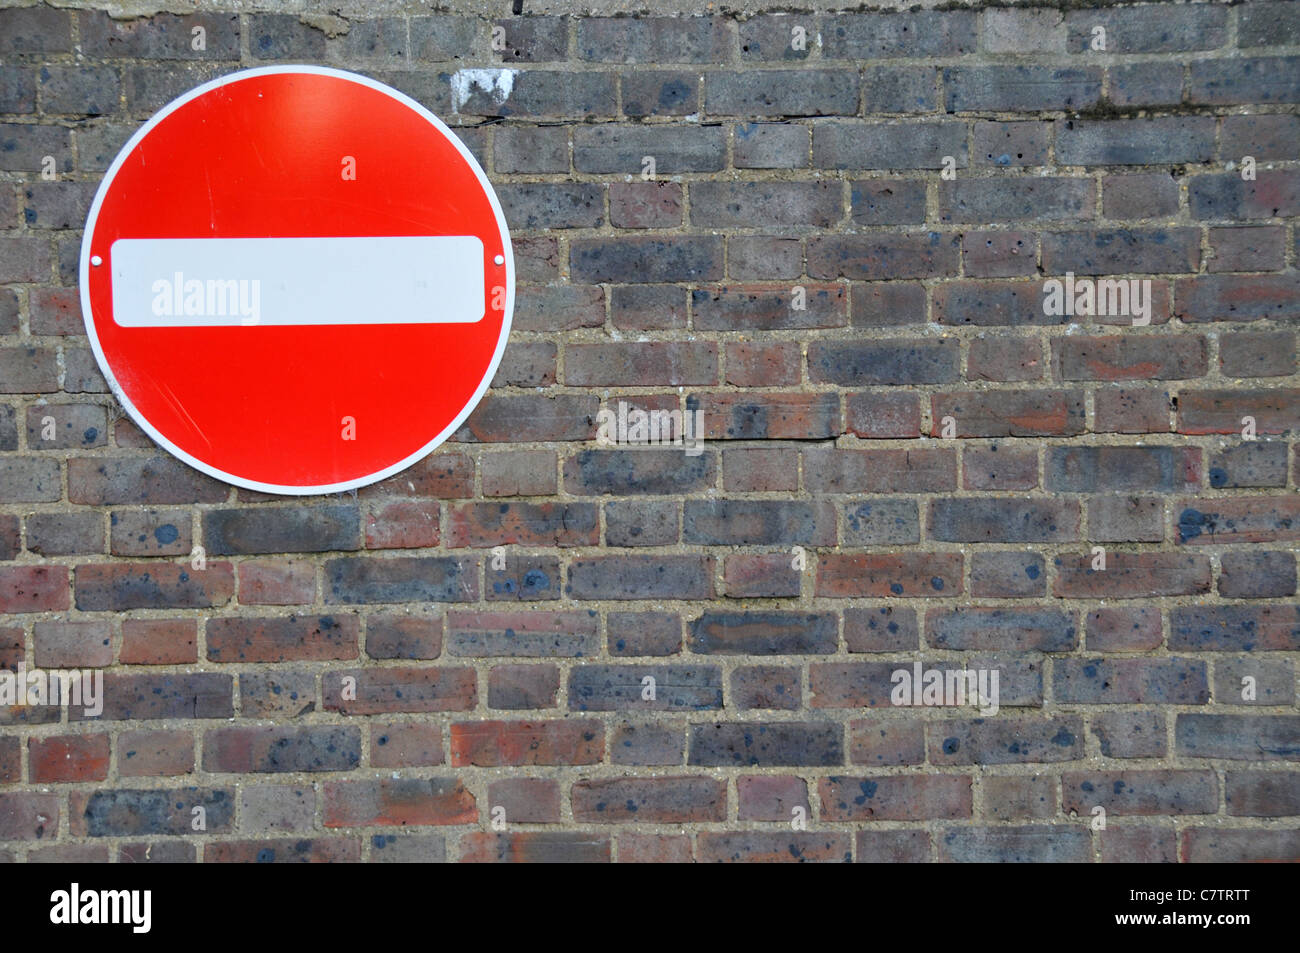 Kein Eintrag Wand Verkehrszeichen ironischen Widerspruch lustig Stockfoto